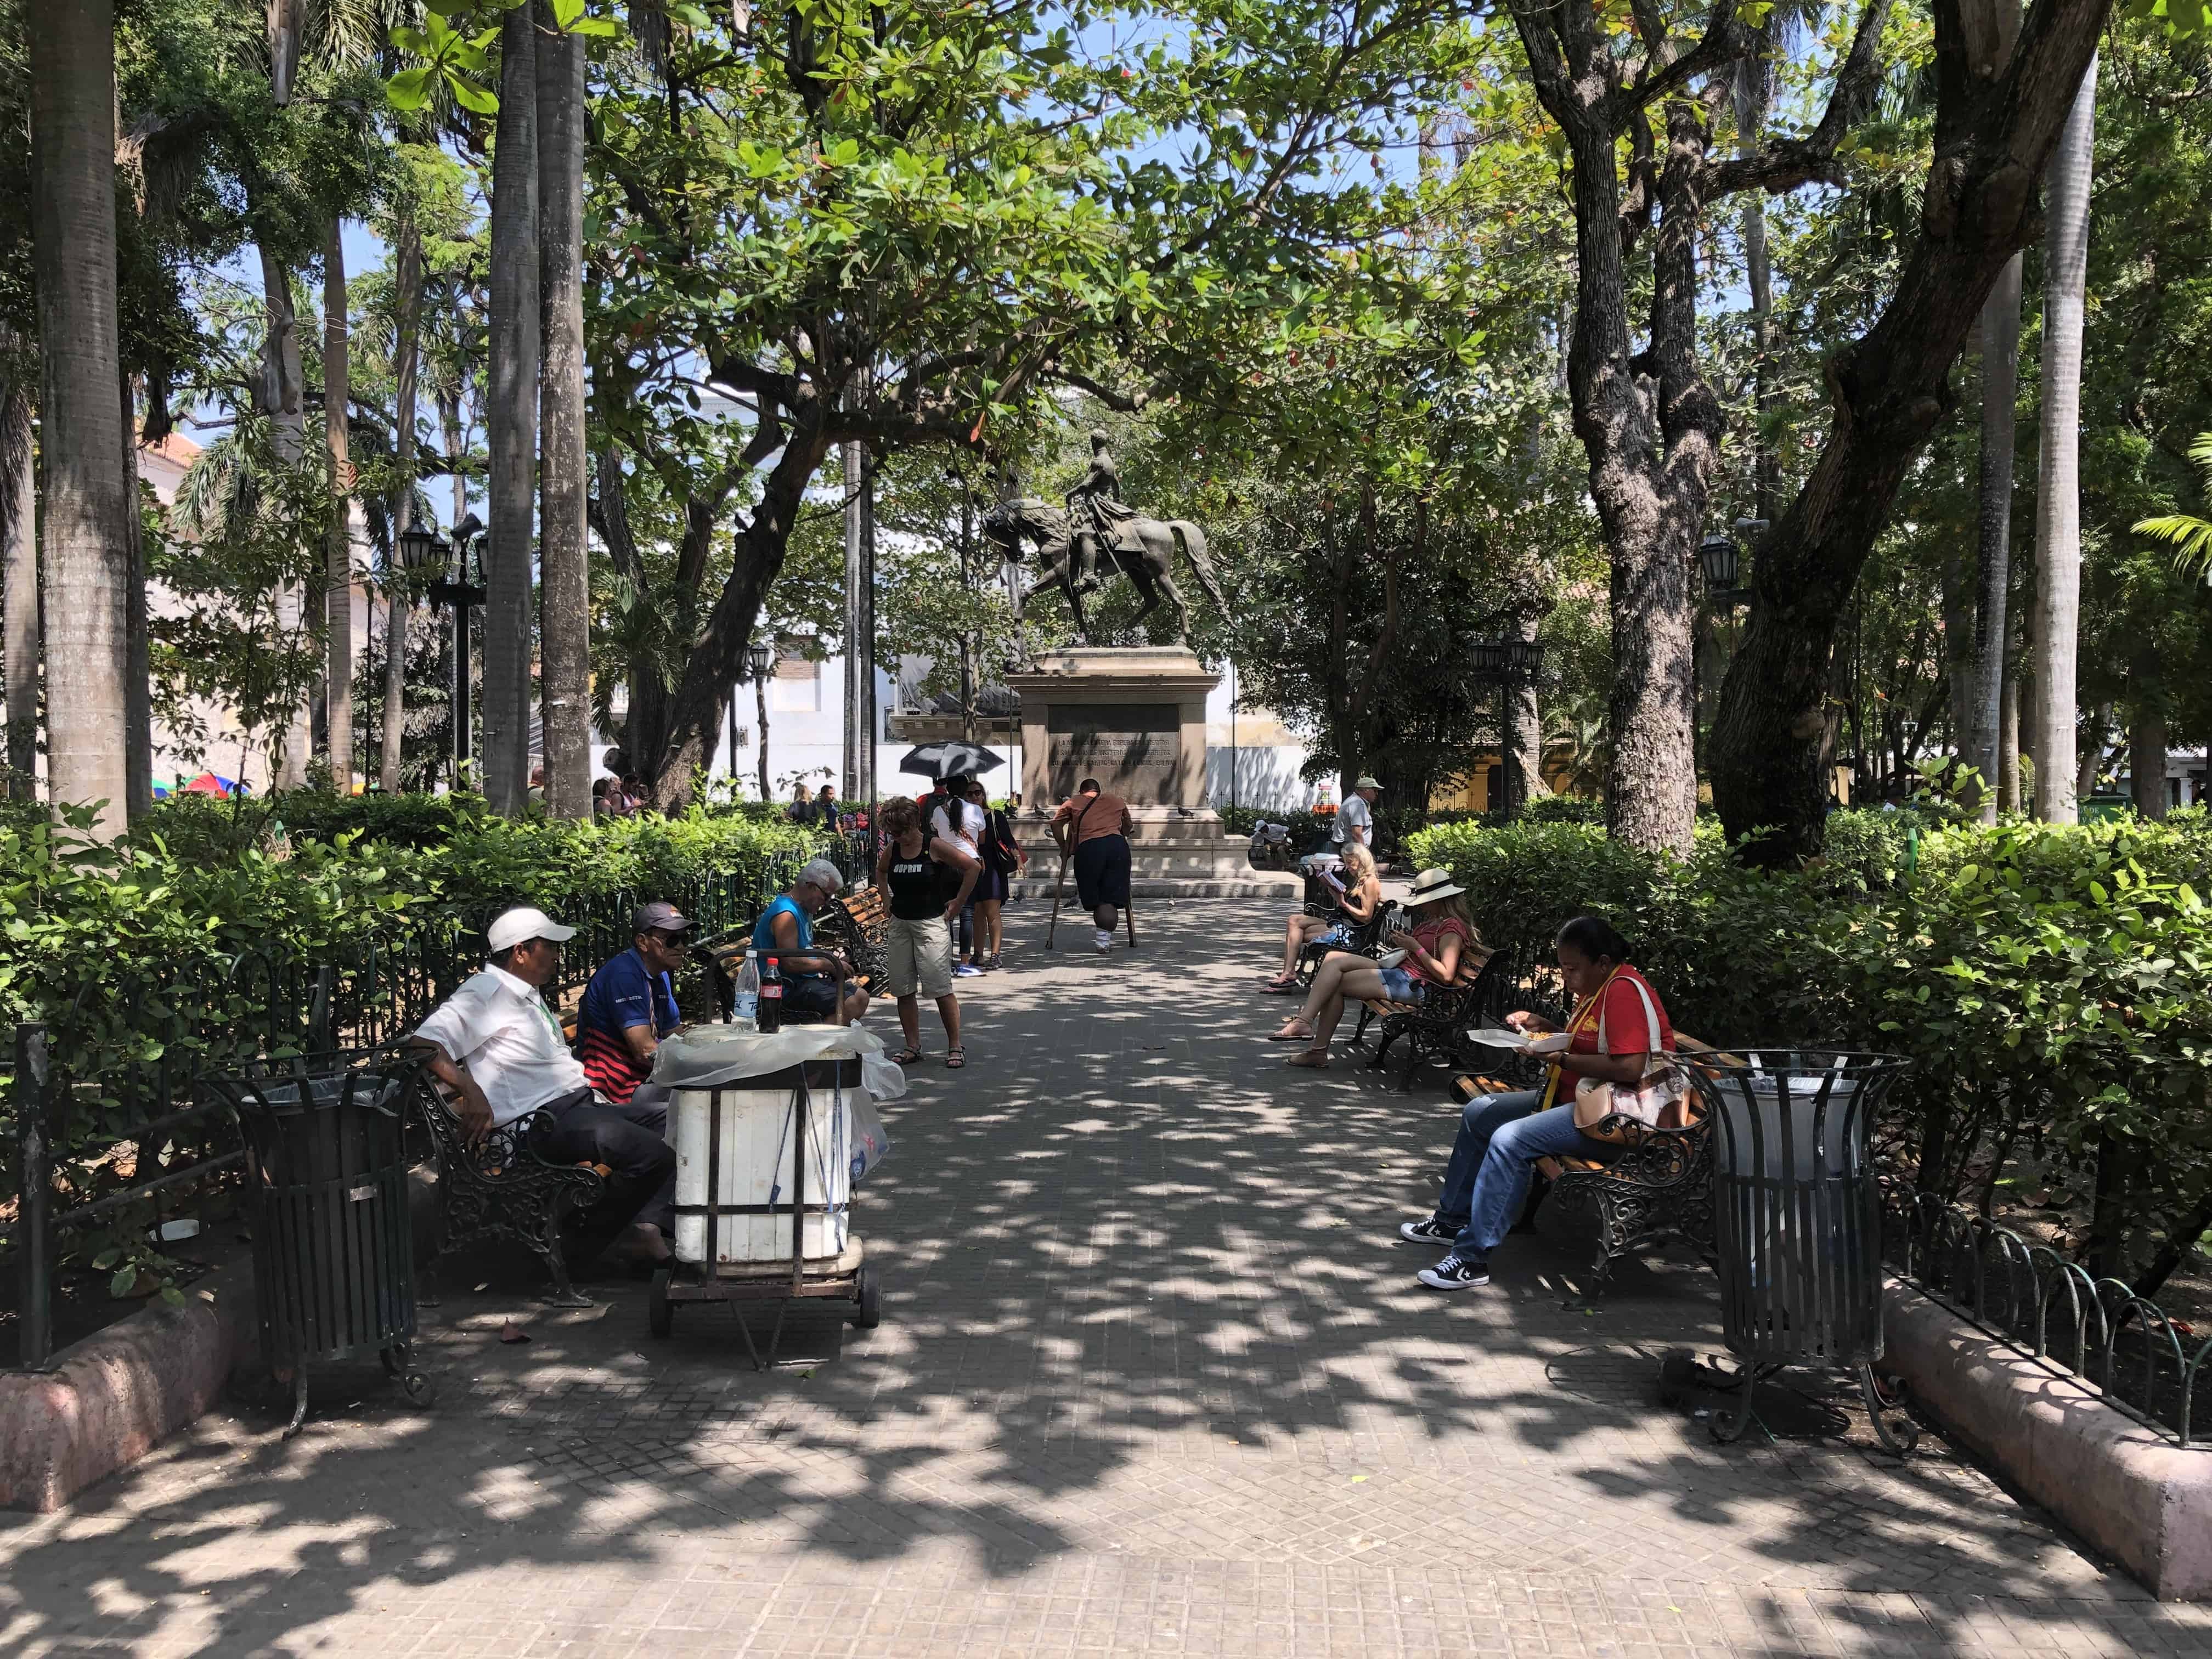 Parque de Bolívar in El Centro, Cartagena, Colombia